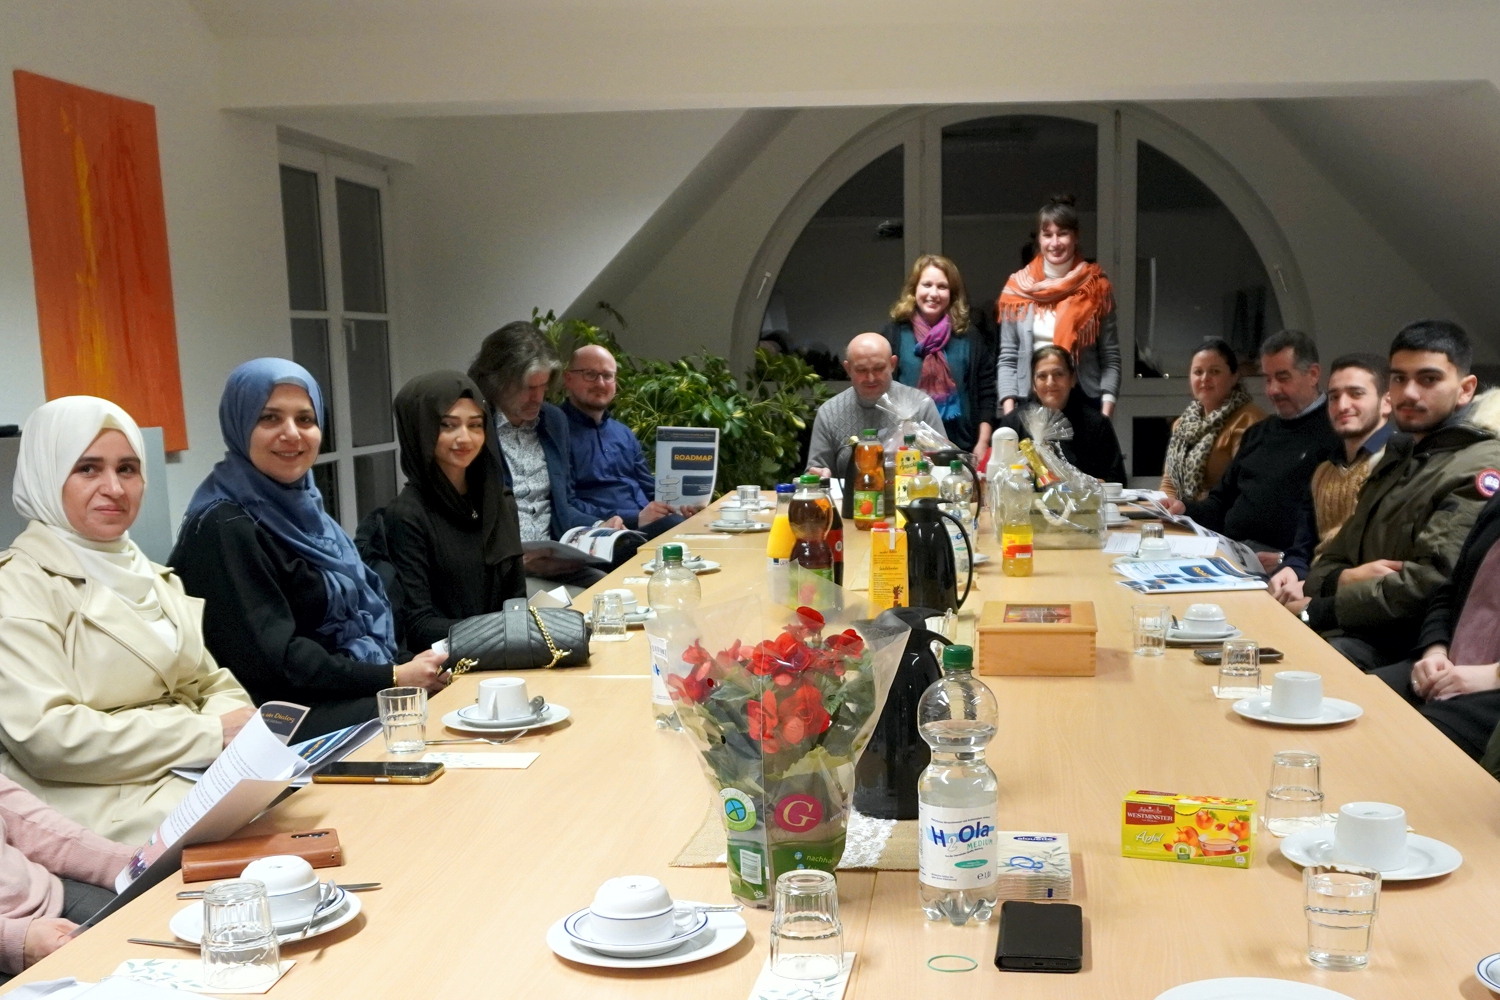 Bild zeigt: Interkulturelle Frauen und Männer sitzen in der Runde an großem Tisch